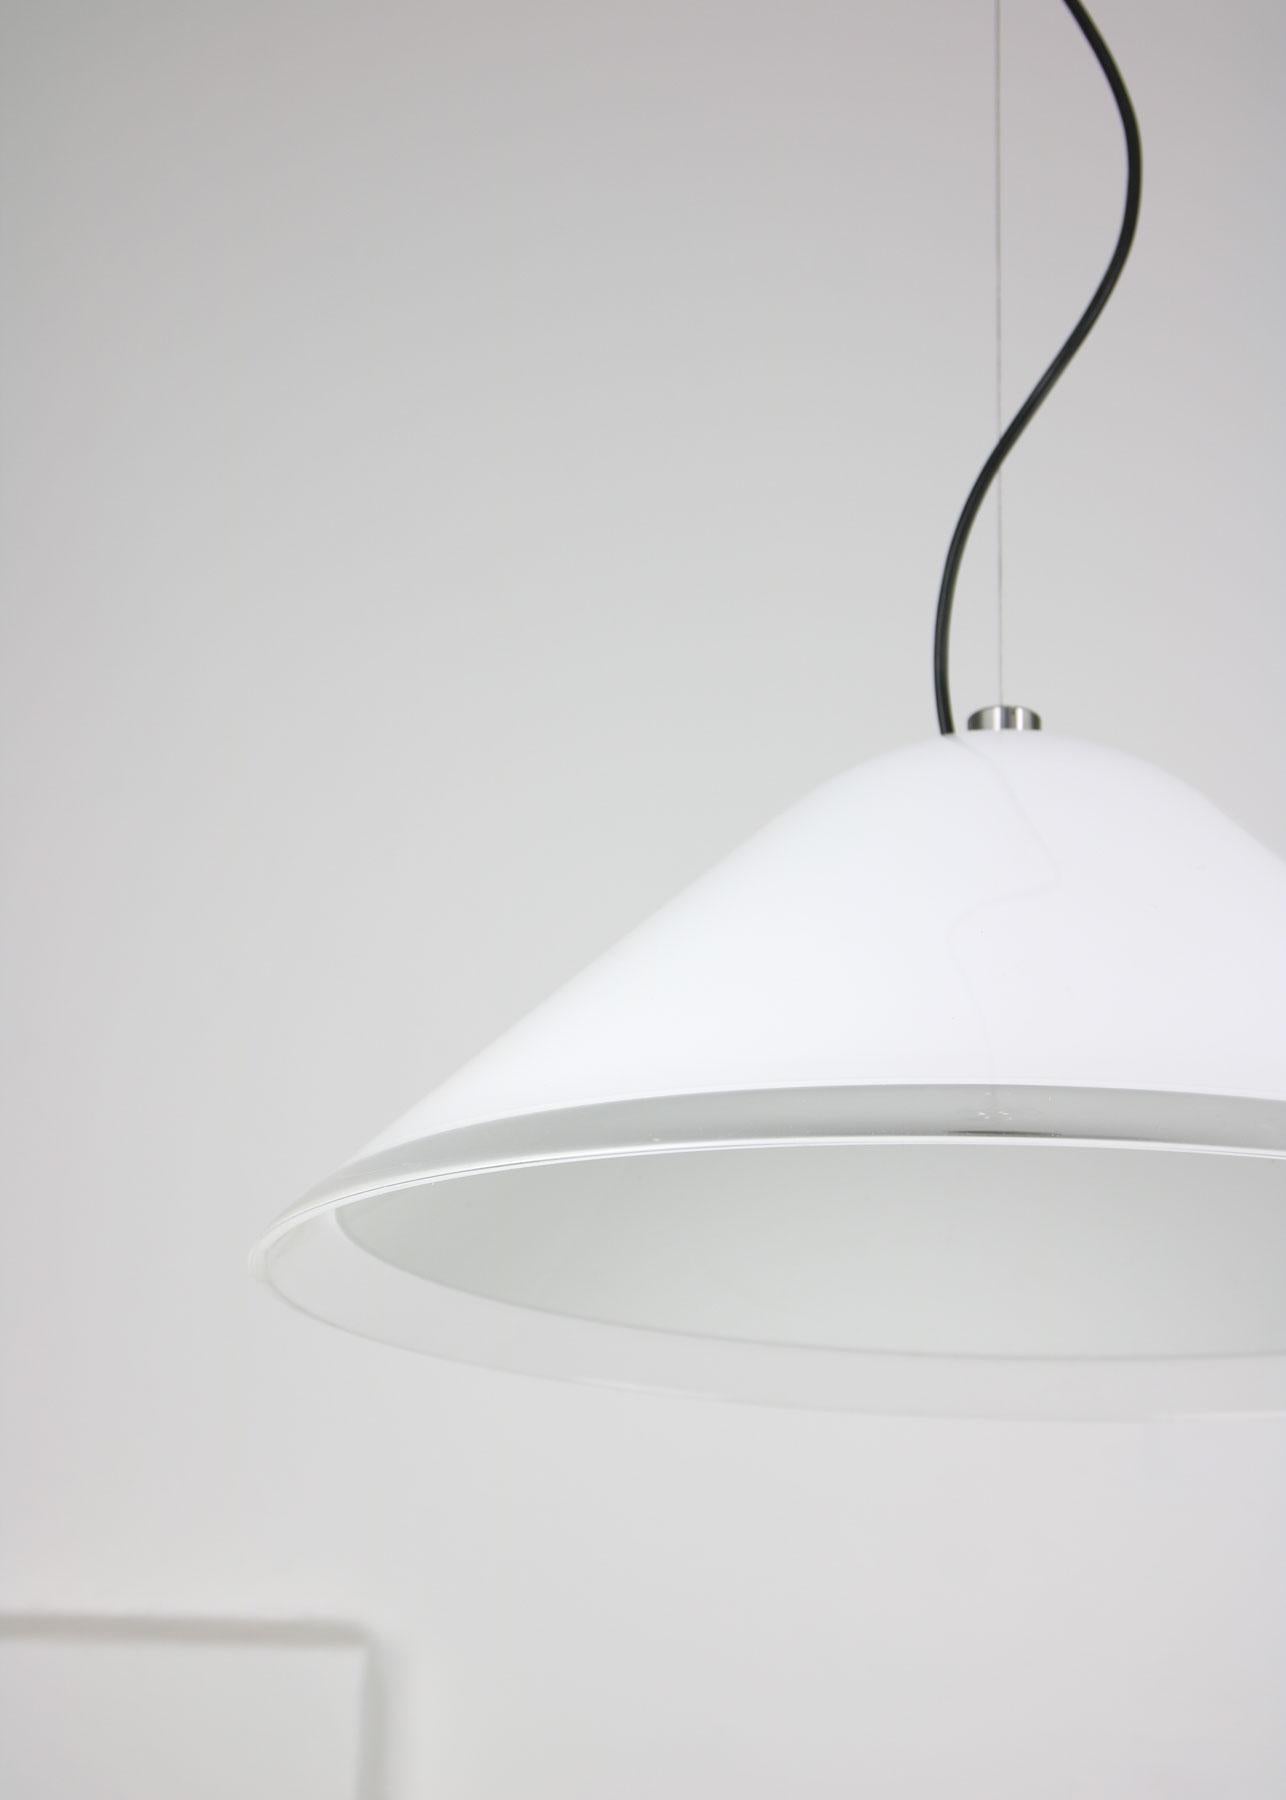 Die Gesamthöhe der Lampe ist bis zu 135 cm verstellbar.

Die Lampenfassung ist für eine Standard-E27-Glühbirne ausgelegt (nicht im Lieferumfang enthalten), kann aber auch mit einer amerikanischen/kanadischen E26-Standardgröße verwendet werden